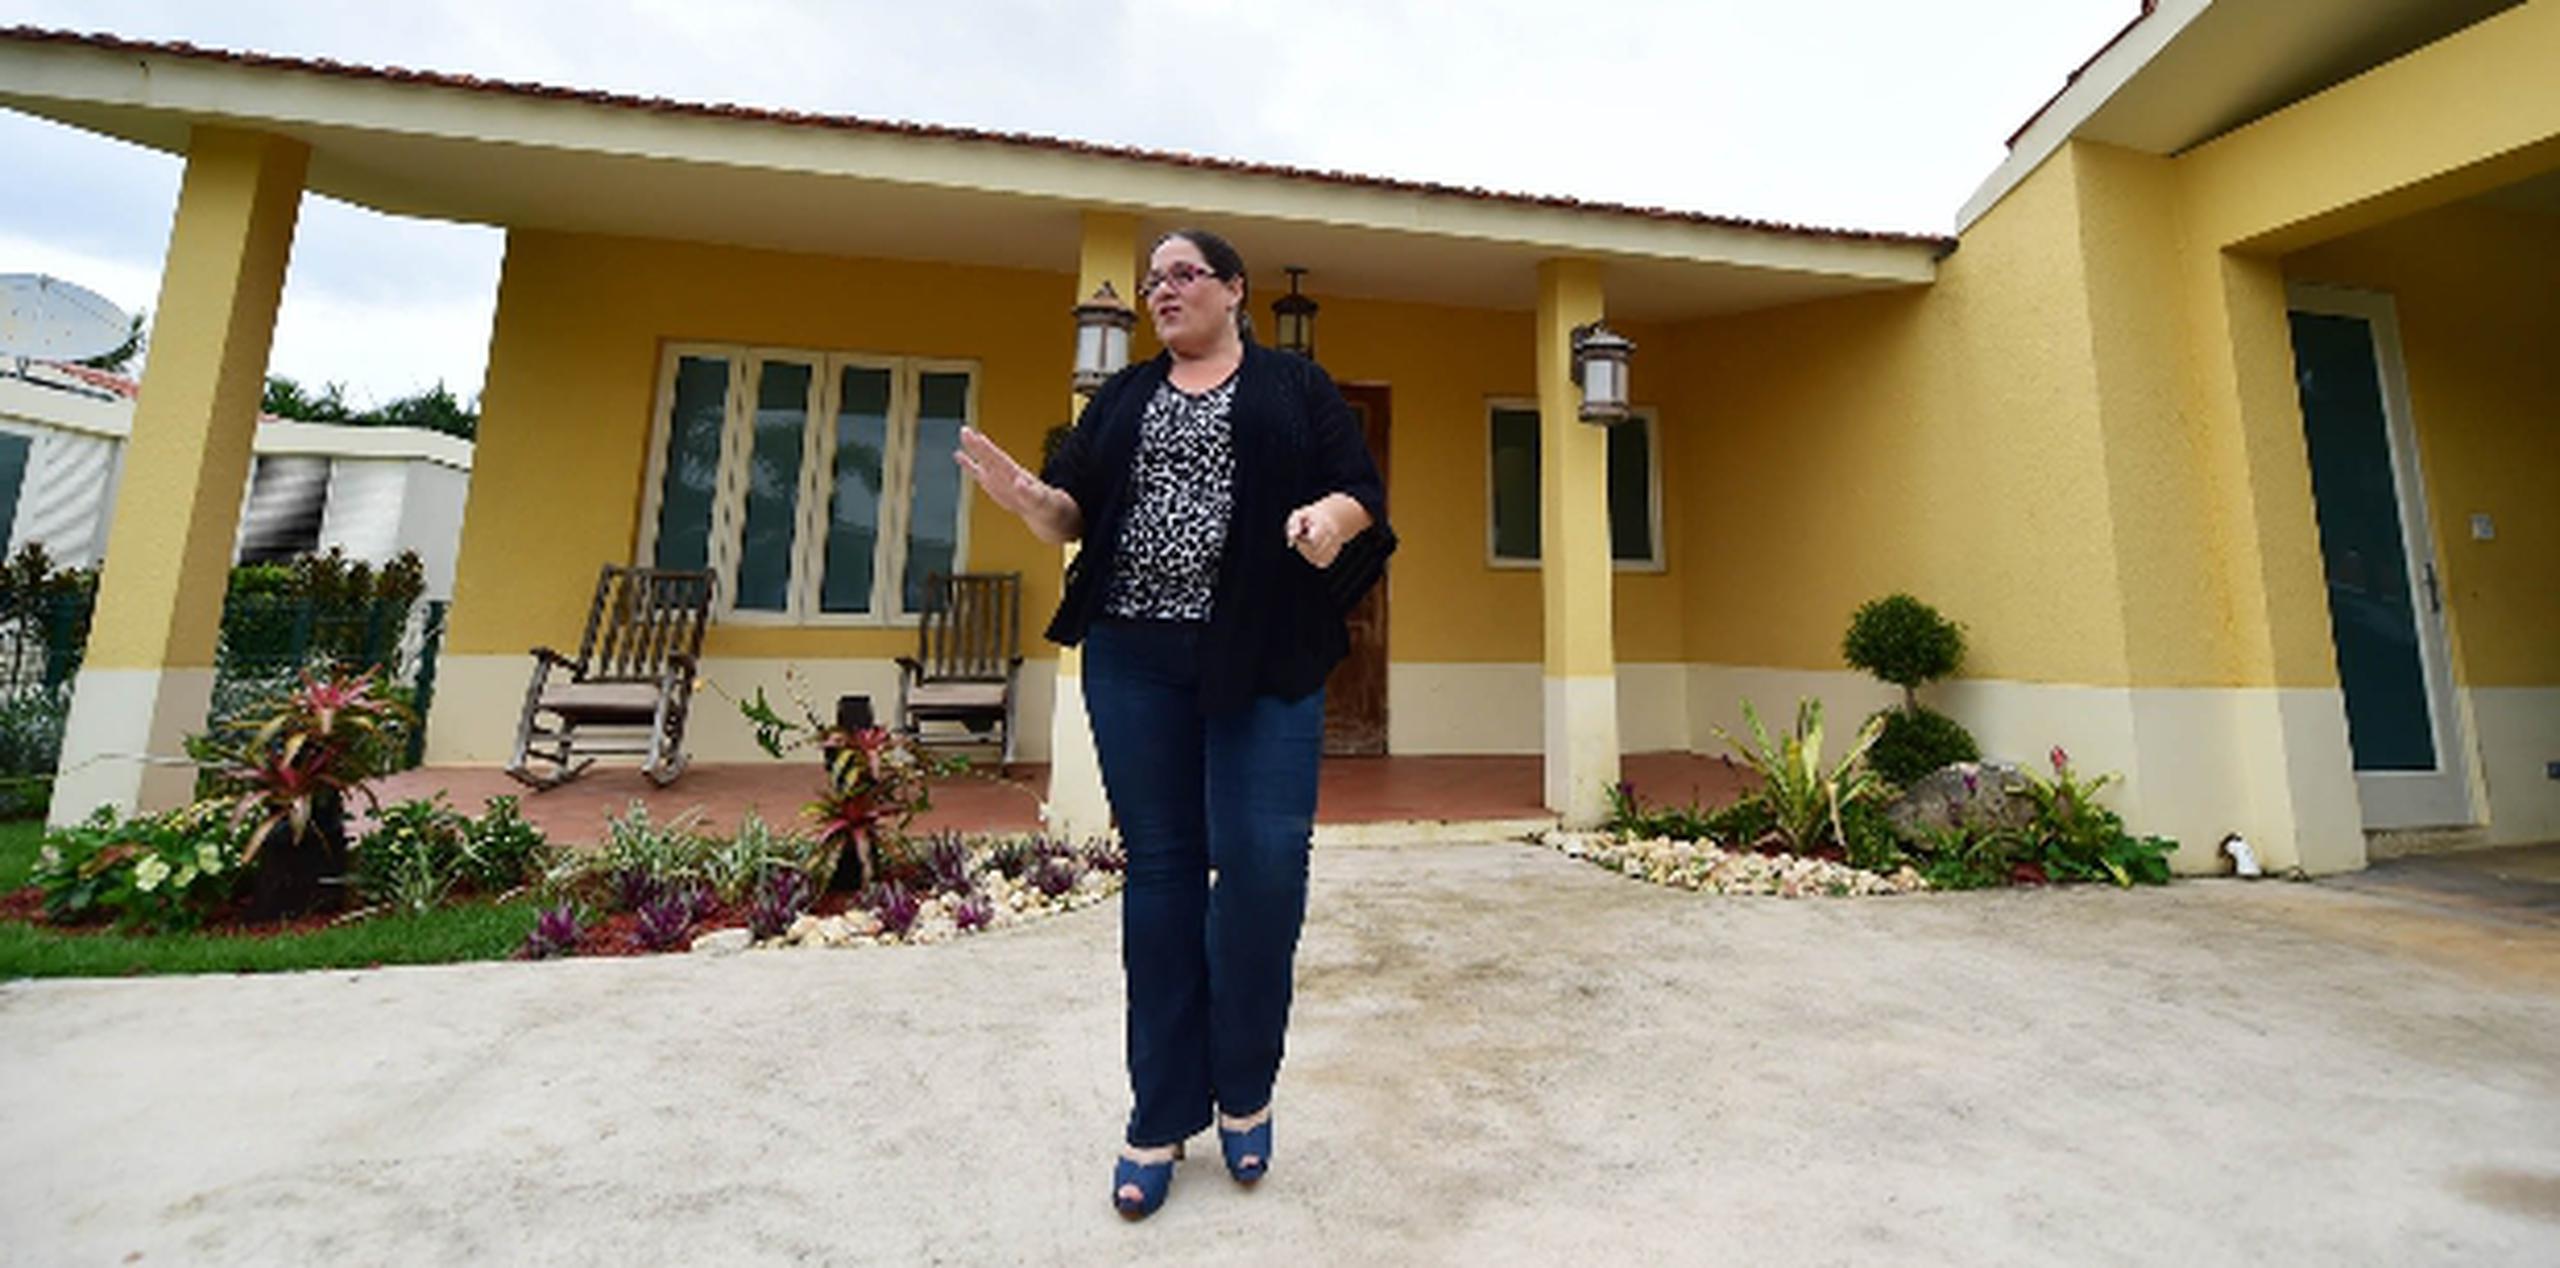 La ex legisladora Melinda Romero recibió ayer a Primera Hora en la casa donde está residiendo en Dorado, que es propiedad de su padre porque la suya, hace ocho años que no la vive. (luis.alcaladelolmo@gfrmedia.com)